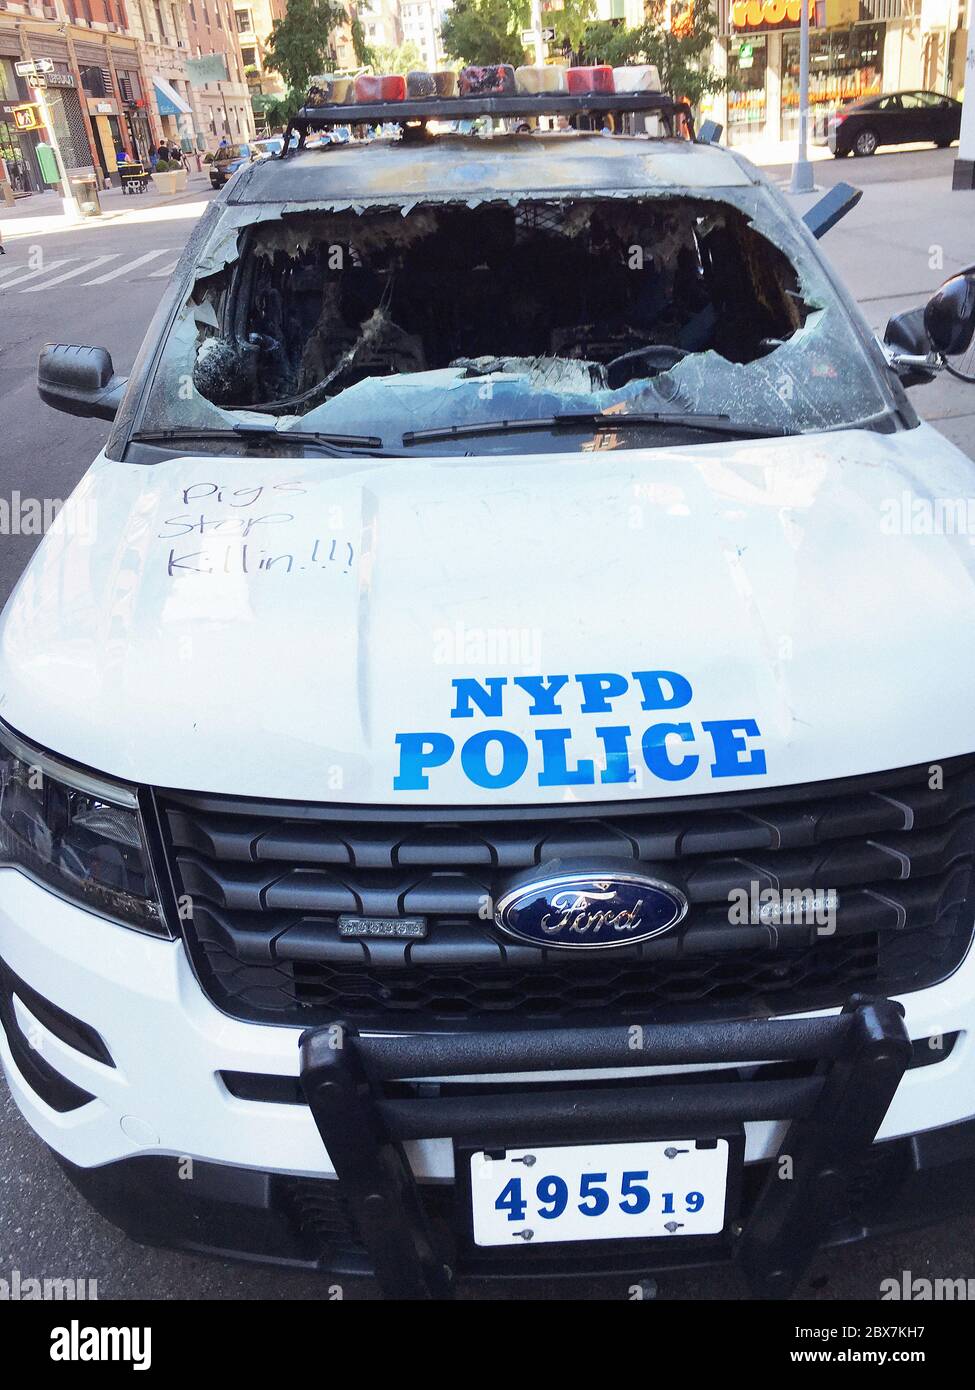 Bruciato NYPD veicolo con Graffiti durante protesta, University Place e 12th Street, New York City, New York, USA, maggio 2020 Foto Stock